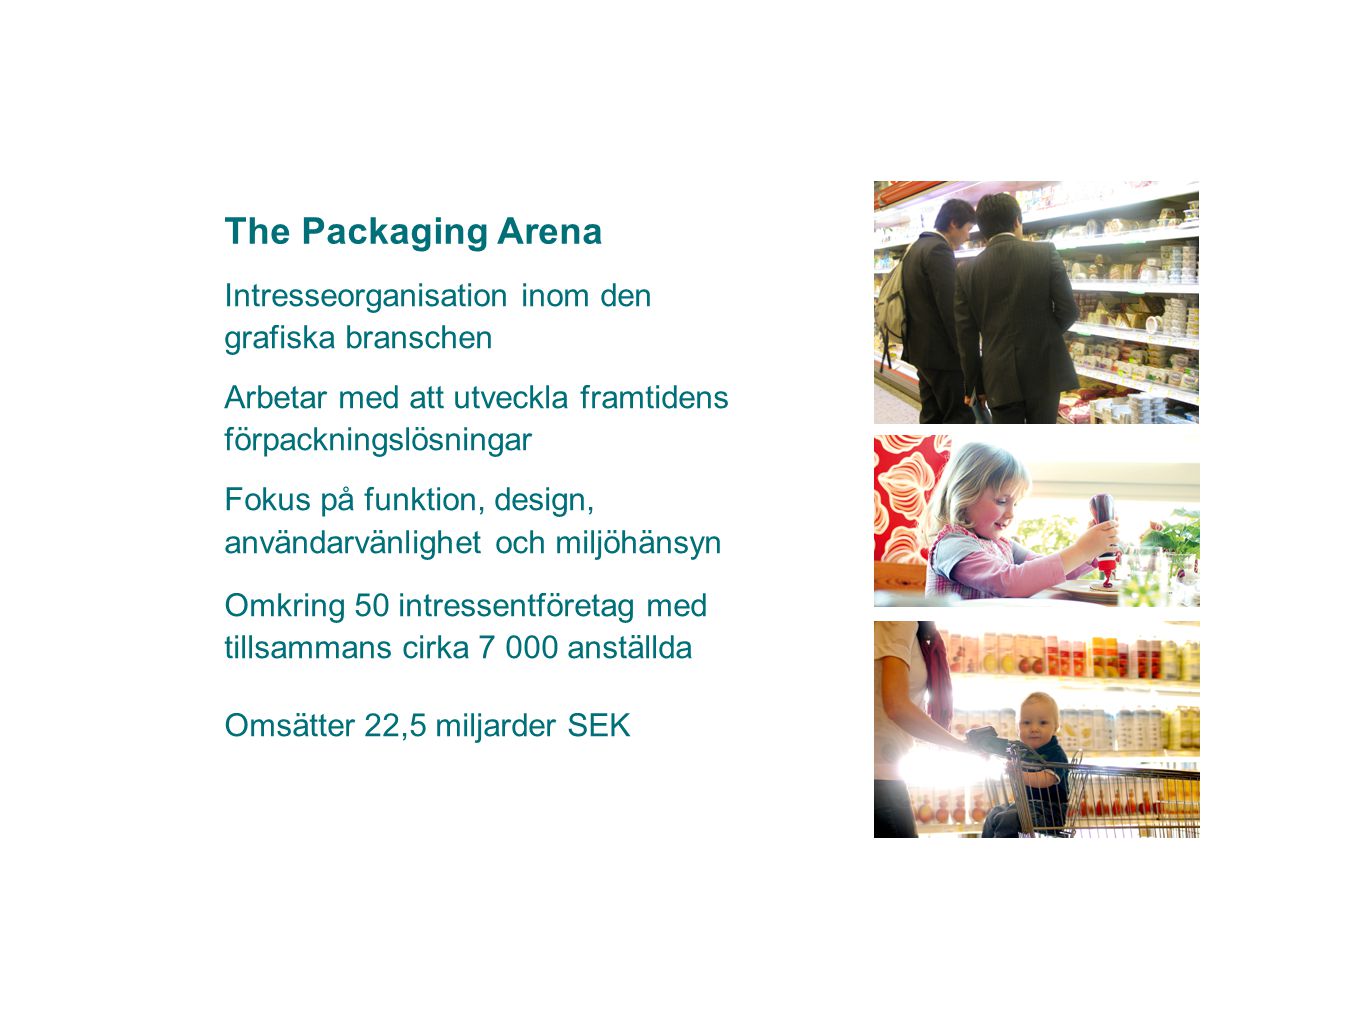 The Packaging Arena Intresseorganisation inom den grafiska branschen Arbetar med att utveckla framtidens förpackningslösningar Fokus på funktion, design, användarvänlighet och miljöhänsyn Omkring 50 intressentföretag med tillsammans cirka anställda Omsätter 22,5 miljarder SEK